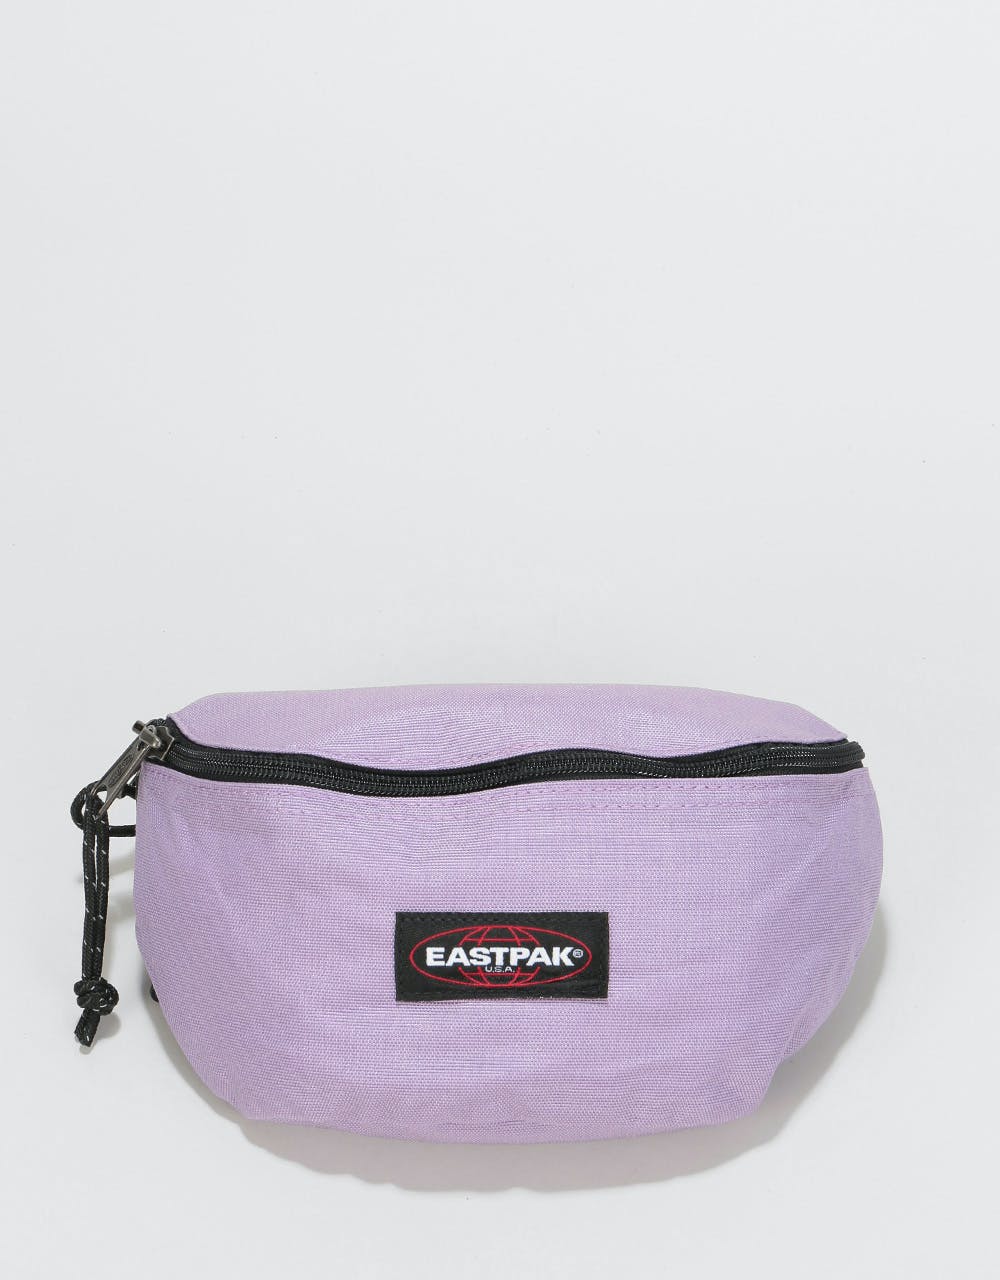 Eastpak Springer Cross Body Bag - Flower Lilac